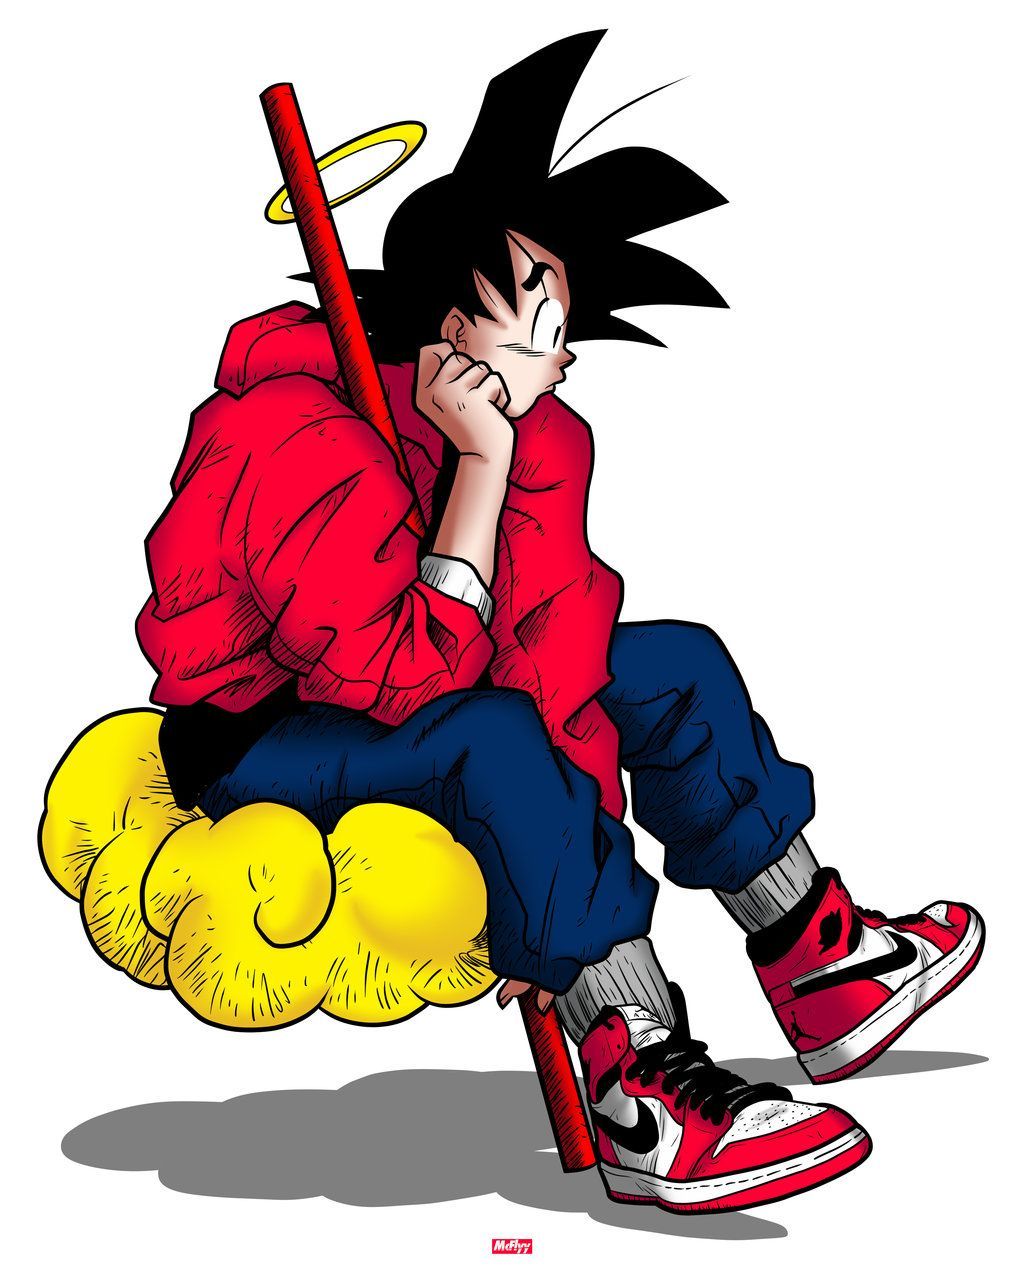 bape instagram anime edits - Google Search  Goku e vegeta, Animação  suspensa, Goku desenho